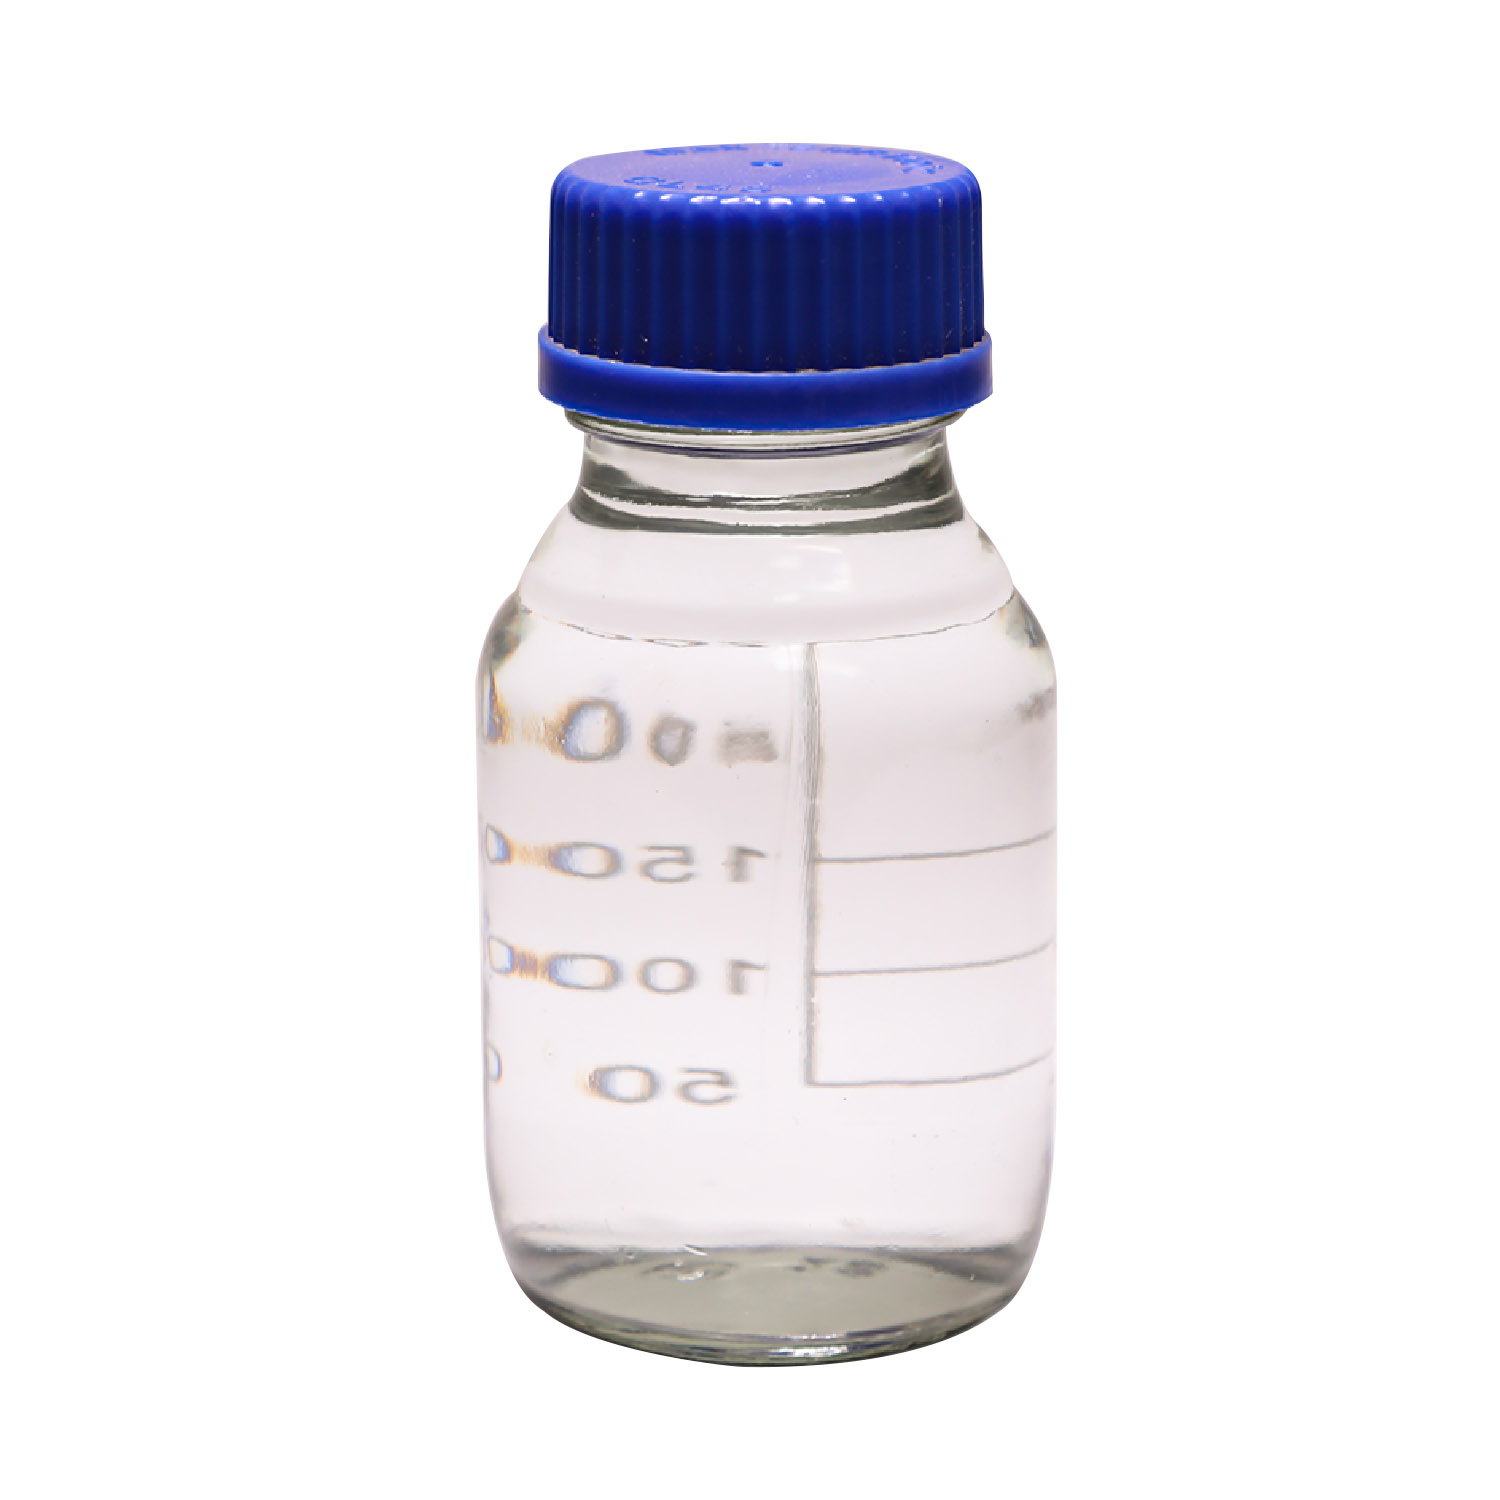 Vásárlás Égésgátló BDP biszfenol-A bisz(difenil-foszfát) Cas5945-33-5,Égésgátló BDP biszfenol-A bisz(difenil-foszfát) Cas5945-33-5 árak,Égésgátló BDP biszfenol-A bisz(difenil-foszfát) Cas5945-33-5 Márka,Égésgátló BDP biszfenol-A bisz(difenil-foszfát) Cas5945-33-5 Gyártó,Égésgátló BDP biszfenol-A bisz(difenil-foszfát) Cas5945-33-5 Idézetek. Égésgátló BDP biszfenol-A bisz(difenil-foszfát) Cas5945-33-5 Társaság,